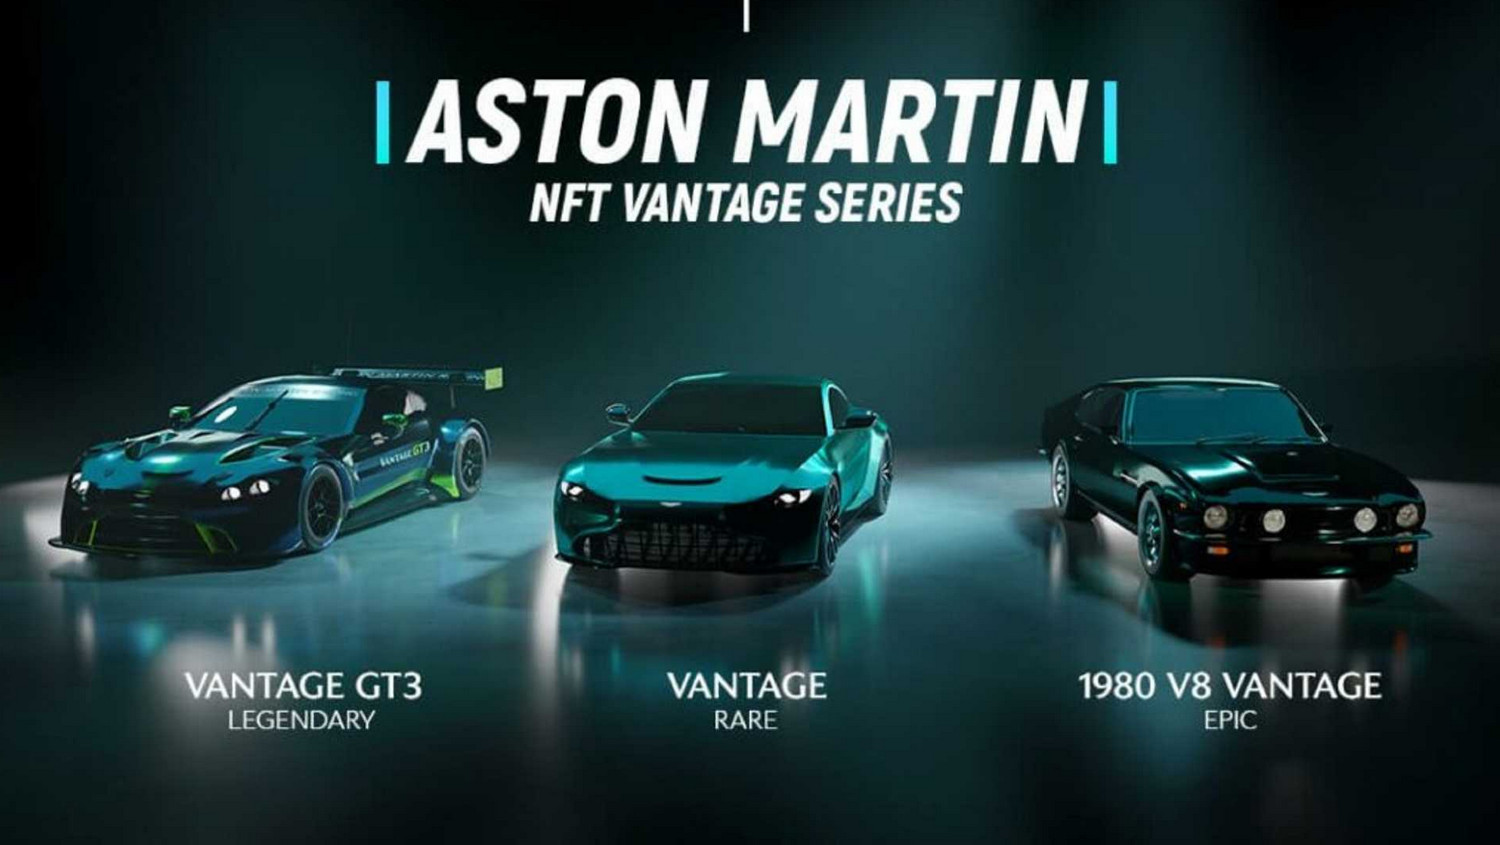 Os três modelos da Aston Martin que vão estar disponíveis no metaverso